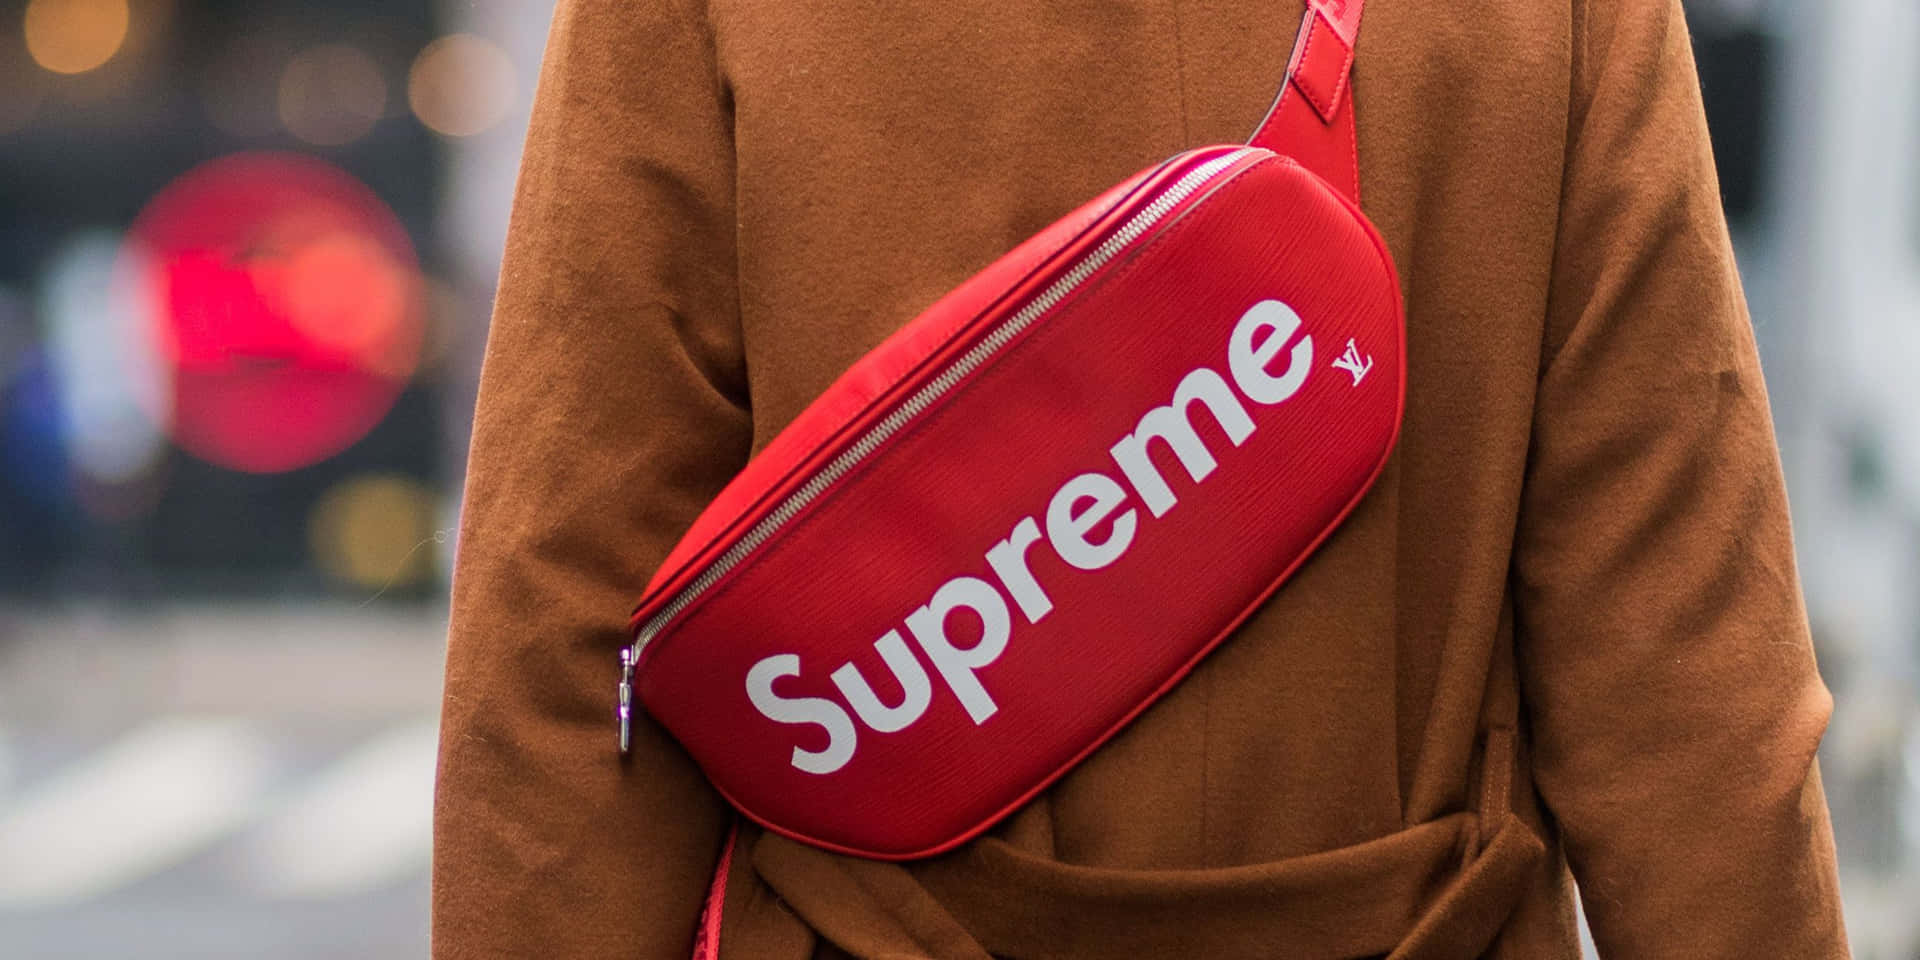 Supremebauchtasche - Eine Frau Trägt Eine Rote Tasche